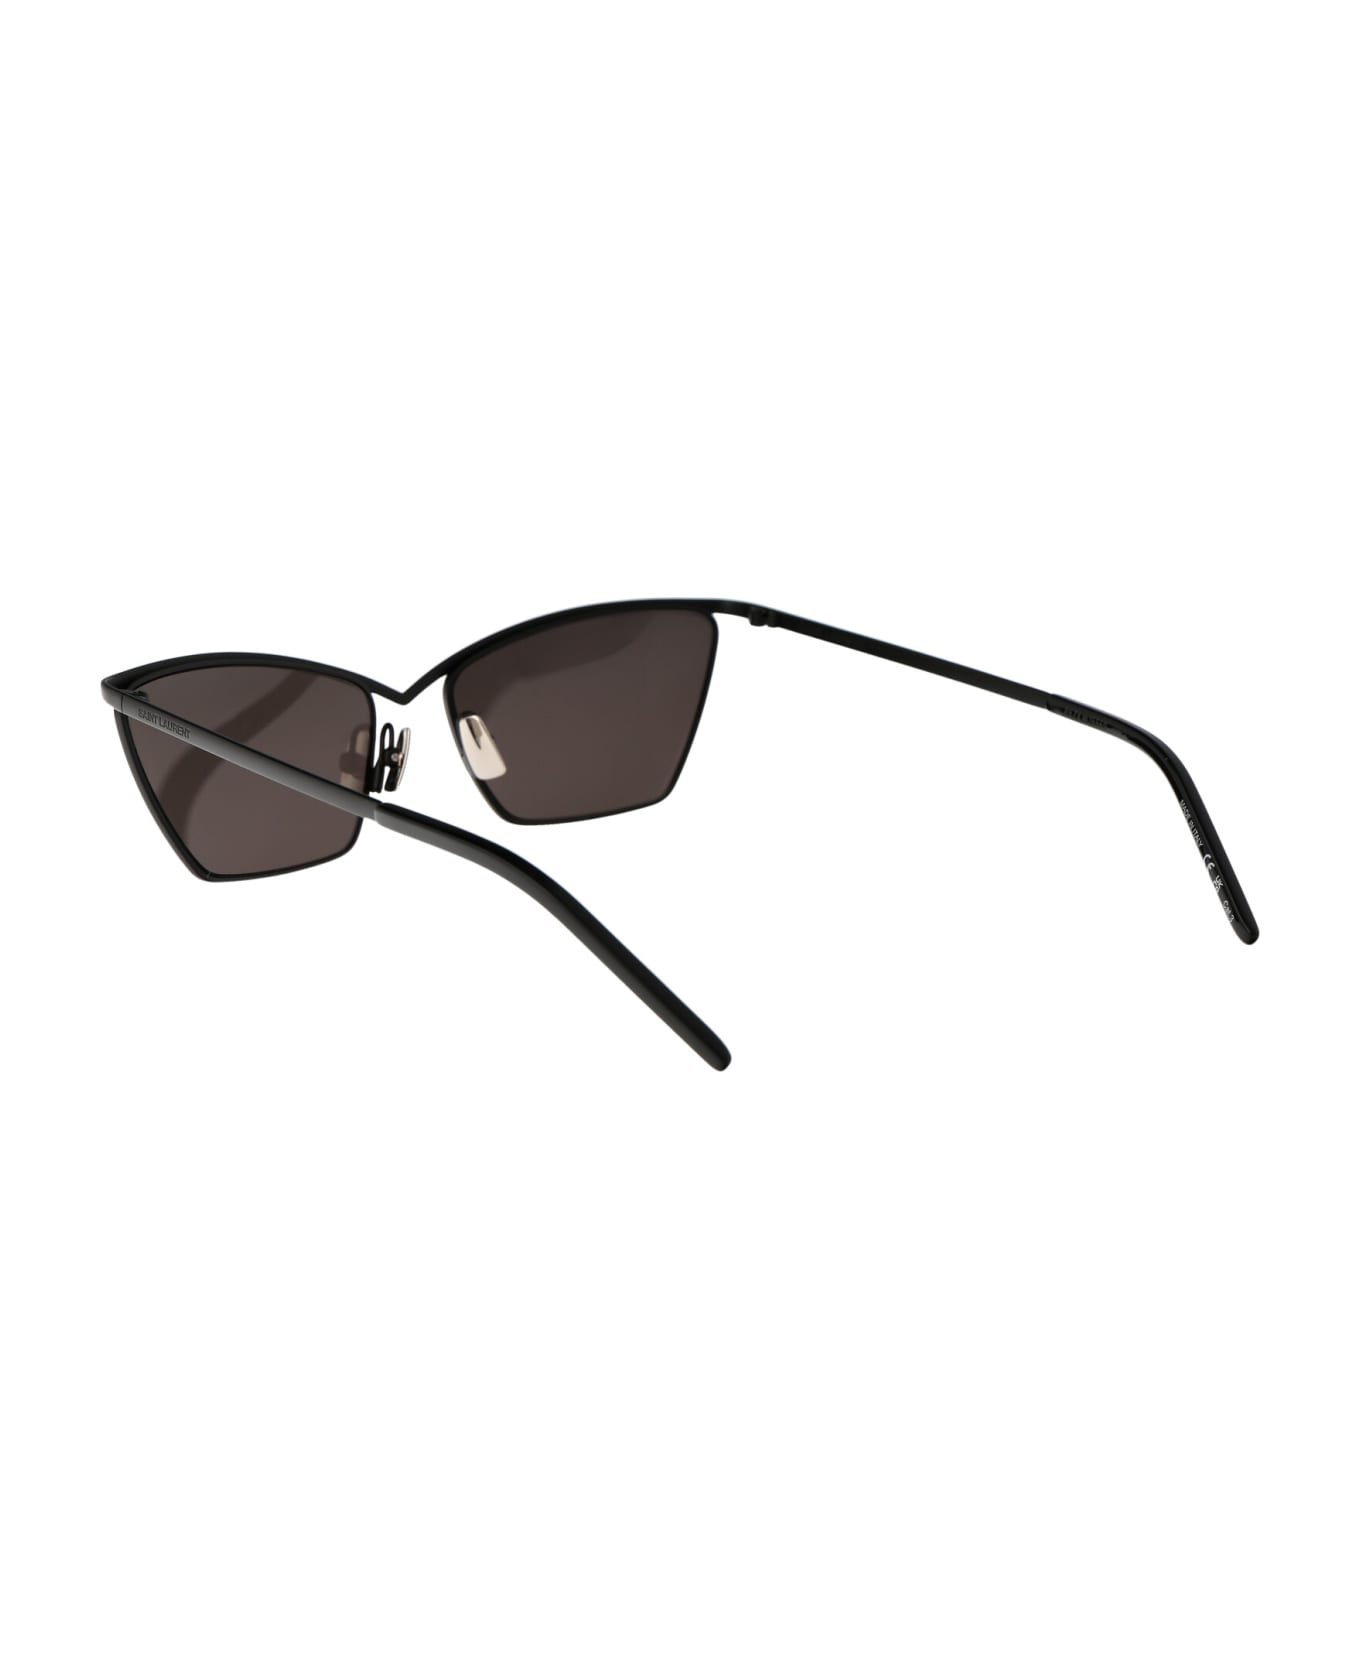 Saint Laurent Eyewear Sl 637 Sunglasses - 001 BLACK BLACK BLACK